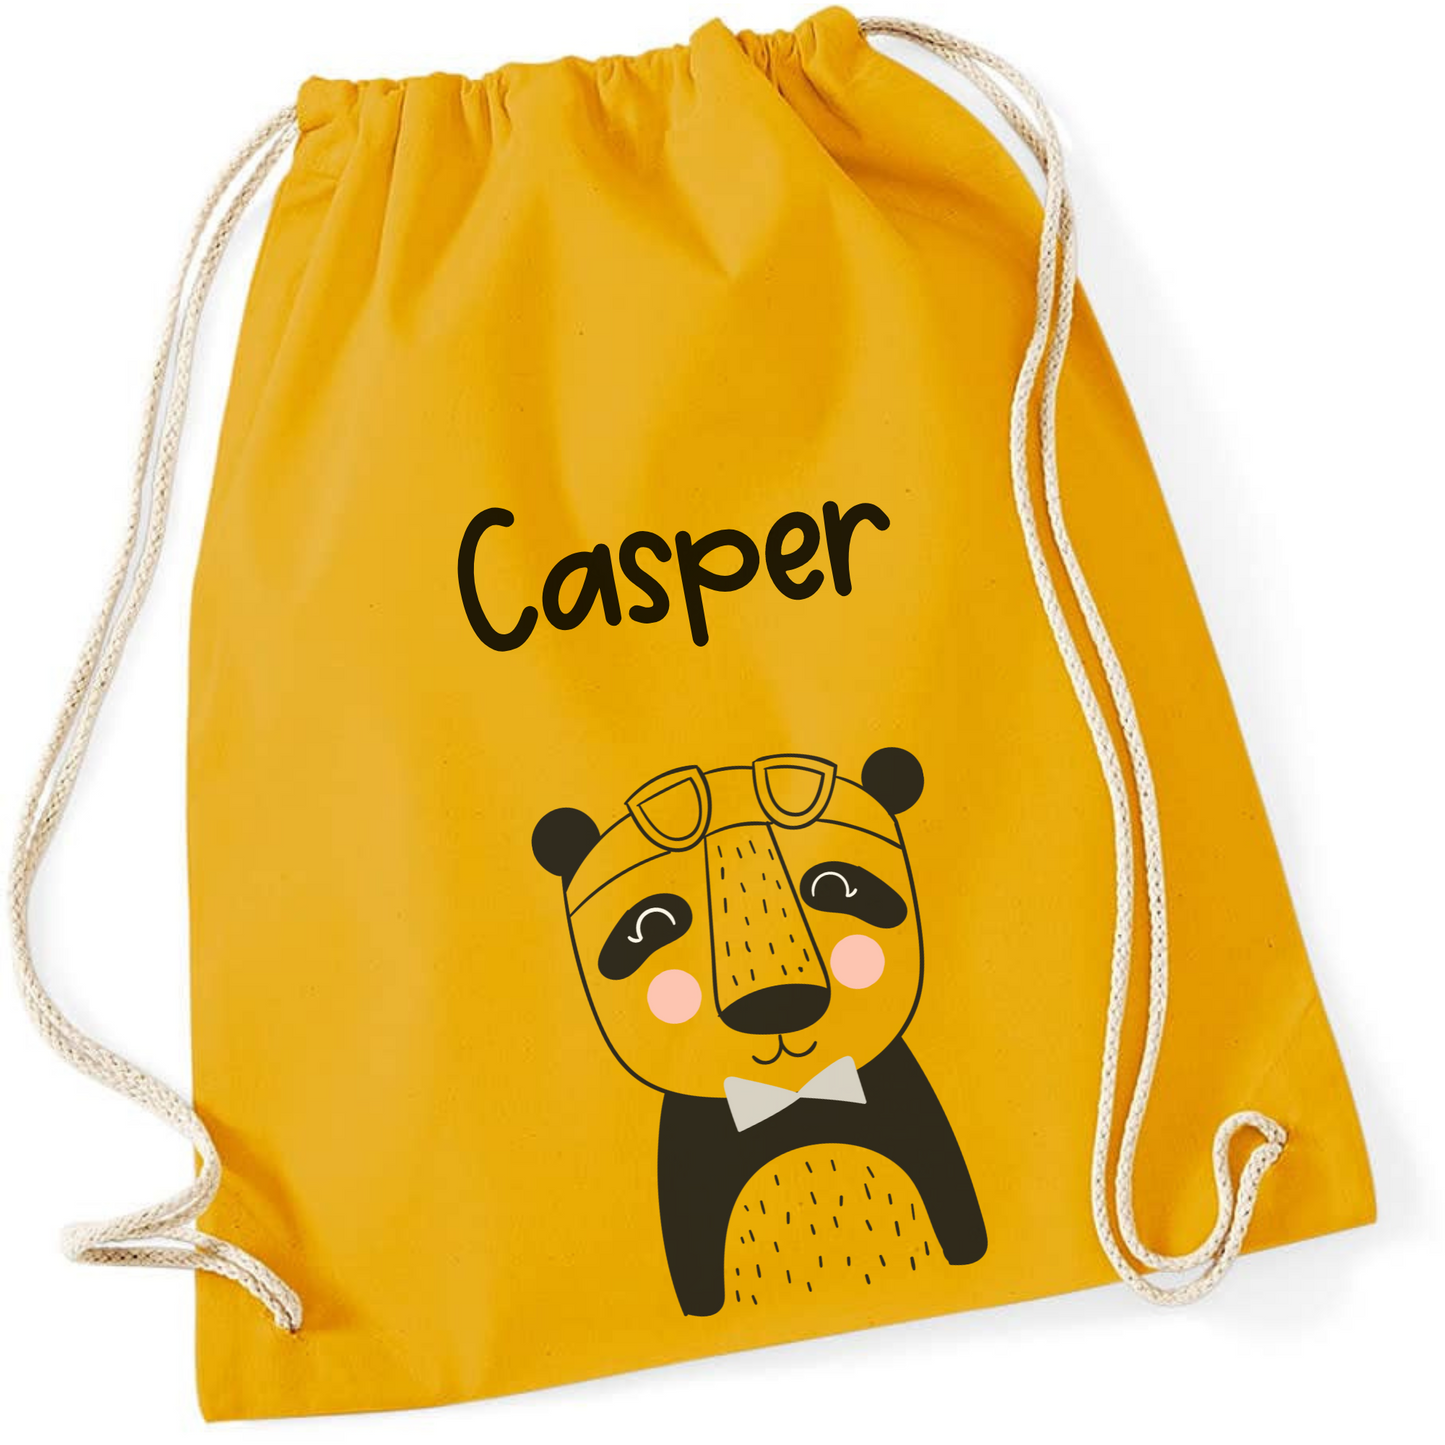 Turnbeutel Kita Kindergarten Stofftasche mit Name personalisiert mit süßen Tieren -  Wechselwäsche, Stoffbeutel personalisiert